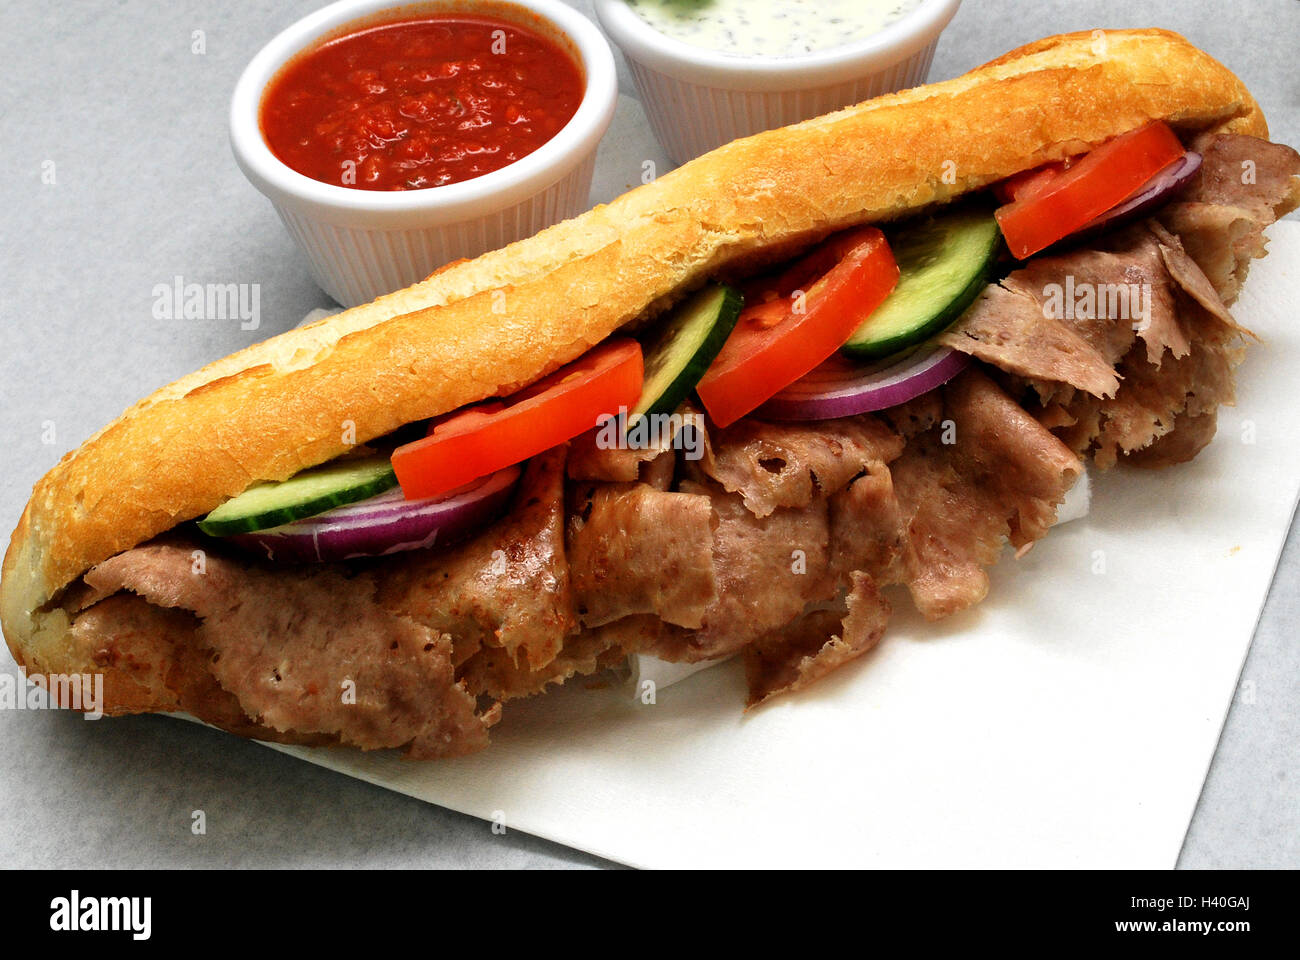 Doner kebab de cordero en baguettes con ensalada, salsa de chili, salsa de ajo Foto de stock